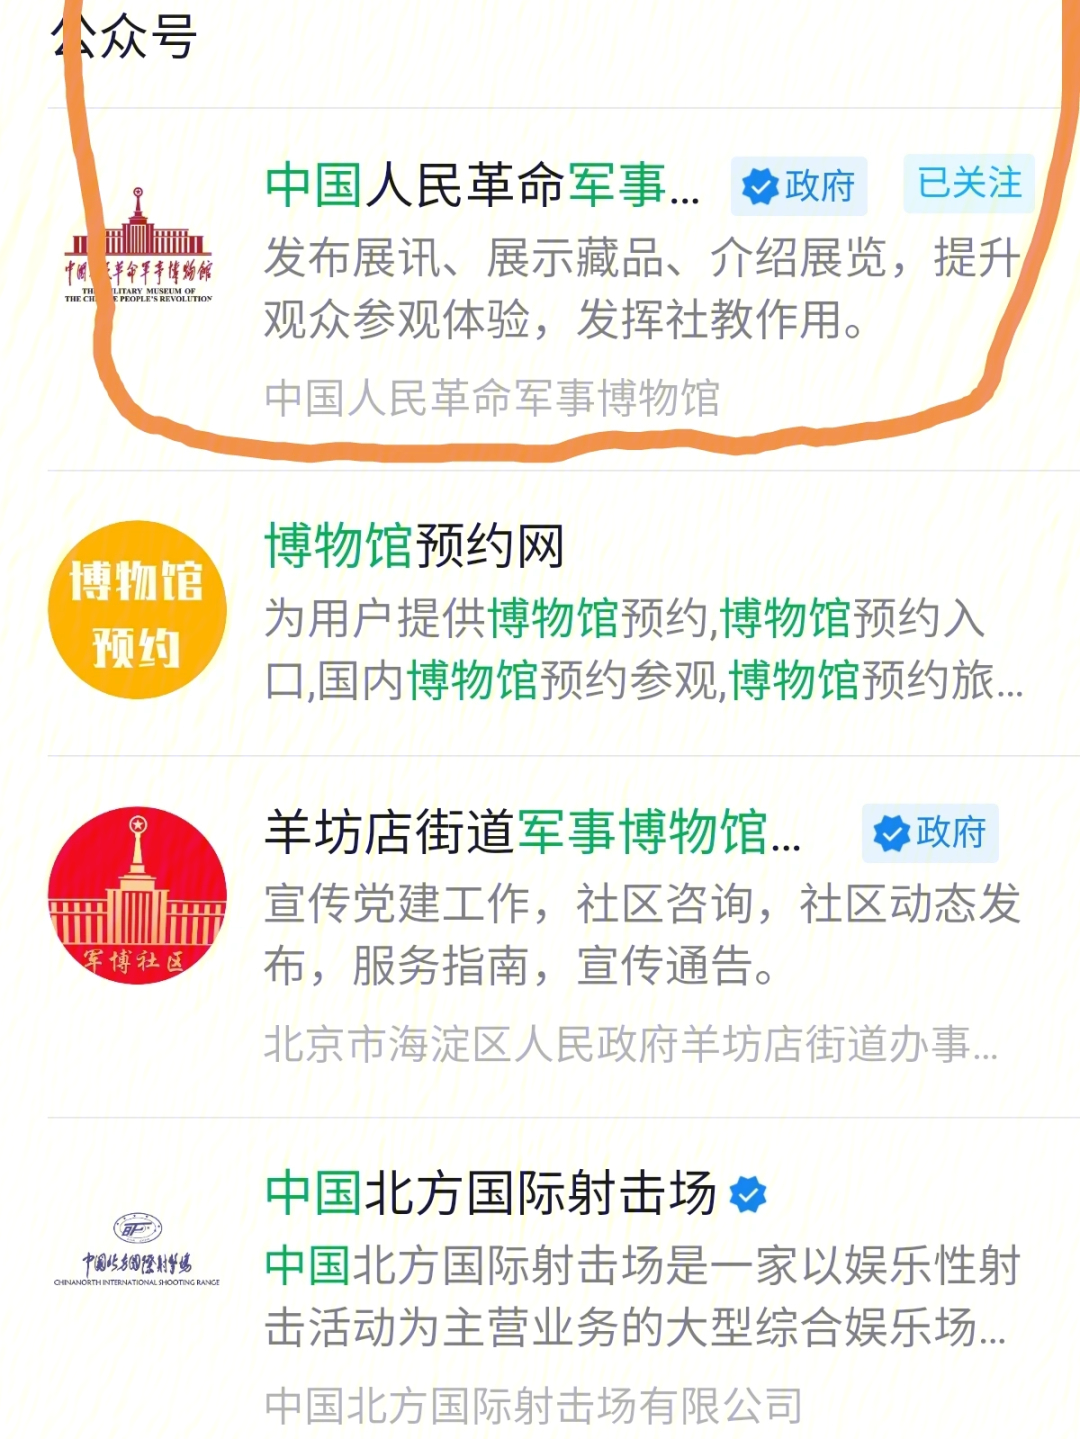 北京军事博物馆关注 中国人民革命军事博物馆 公众号选择门票预约第一